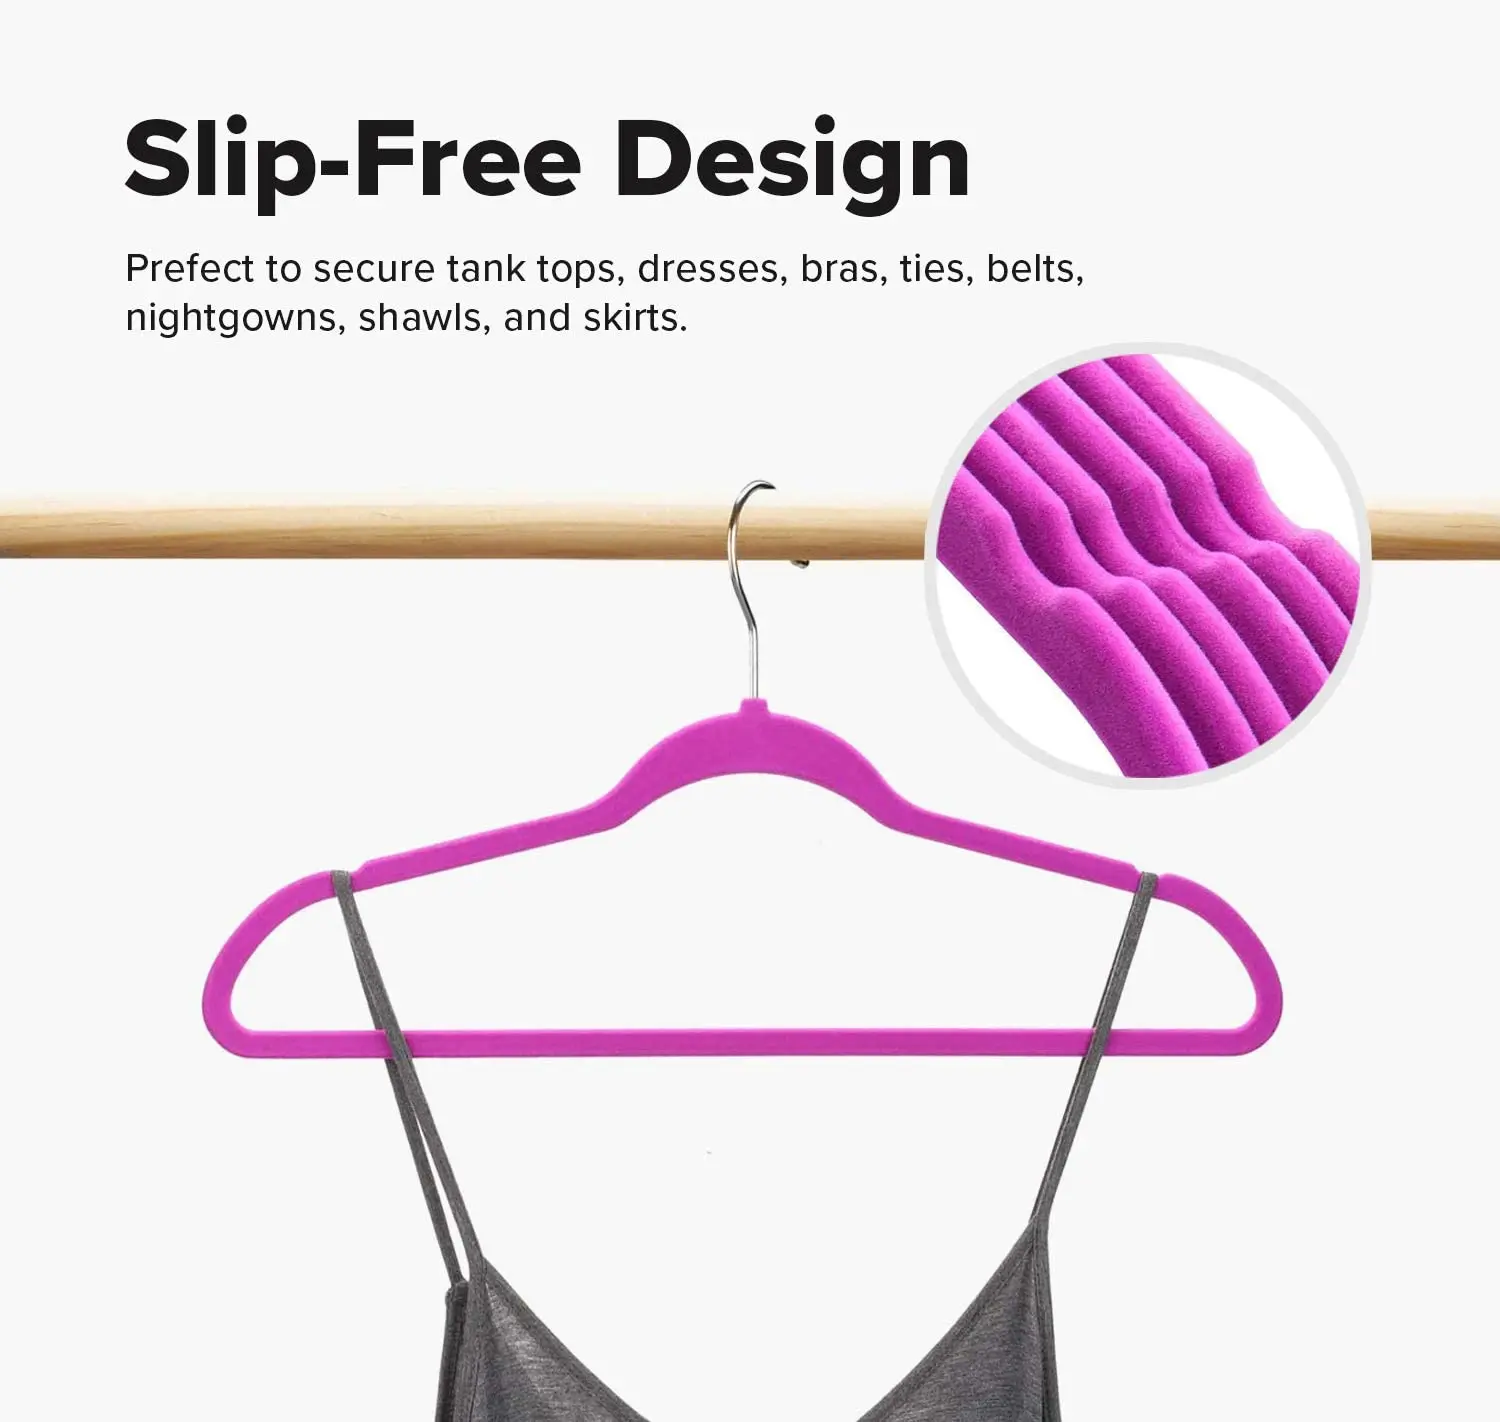 360 degree swivel hook non-slip velvet clothes pink flocked hangers